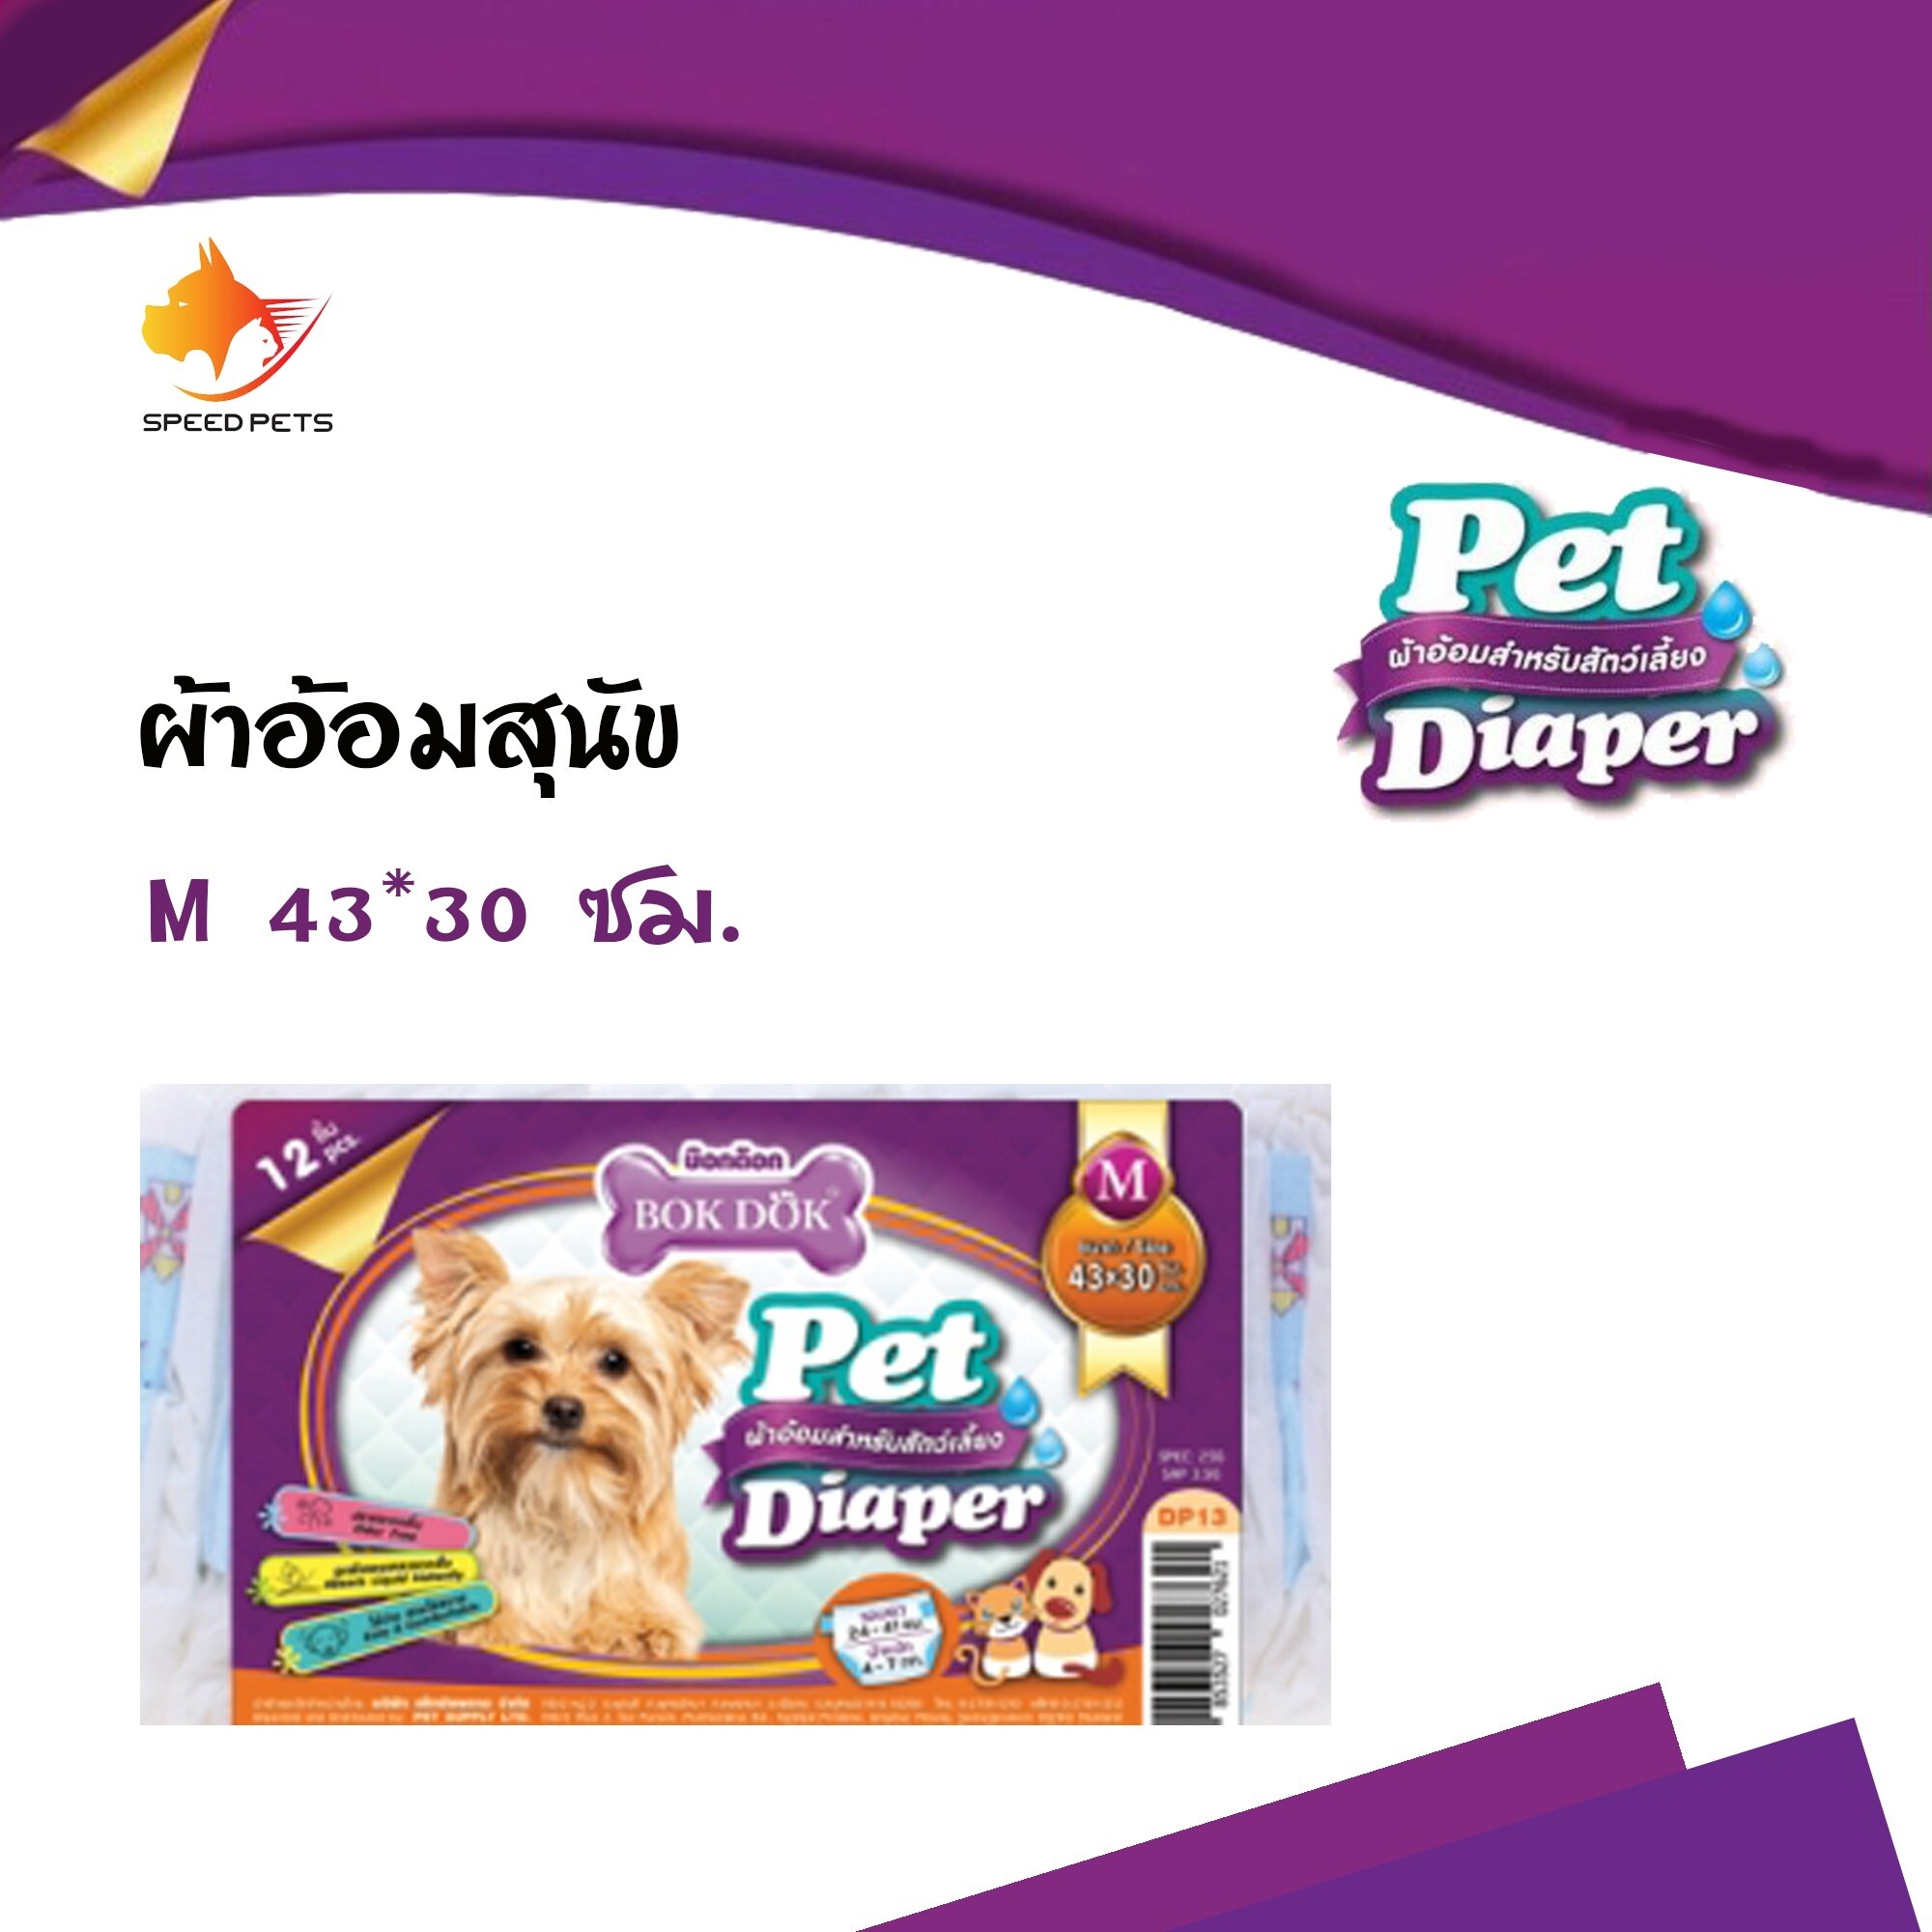 Bok Dok Pet Diaper Bok Dok Pet Diaper ผ้าอ้อม กางเกงอนามัยสุนัข สำหรับสุนัขและแมว ตัวเมีย ขนาด43*30 Size M 12ชิ้น/แพ็ค